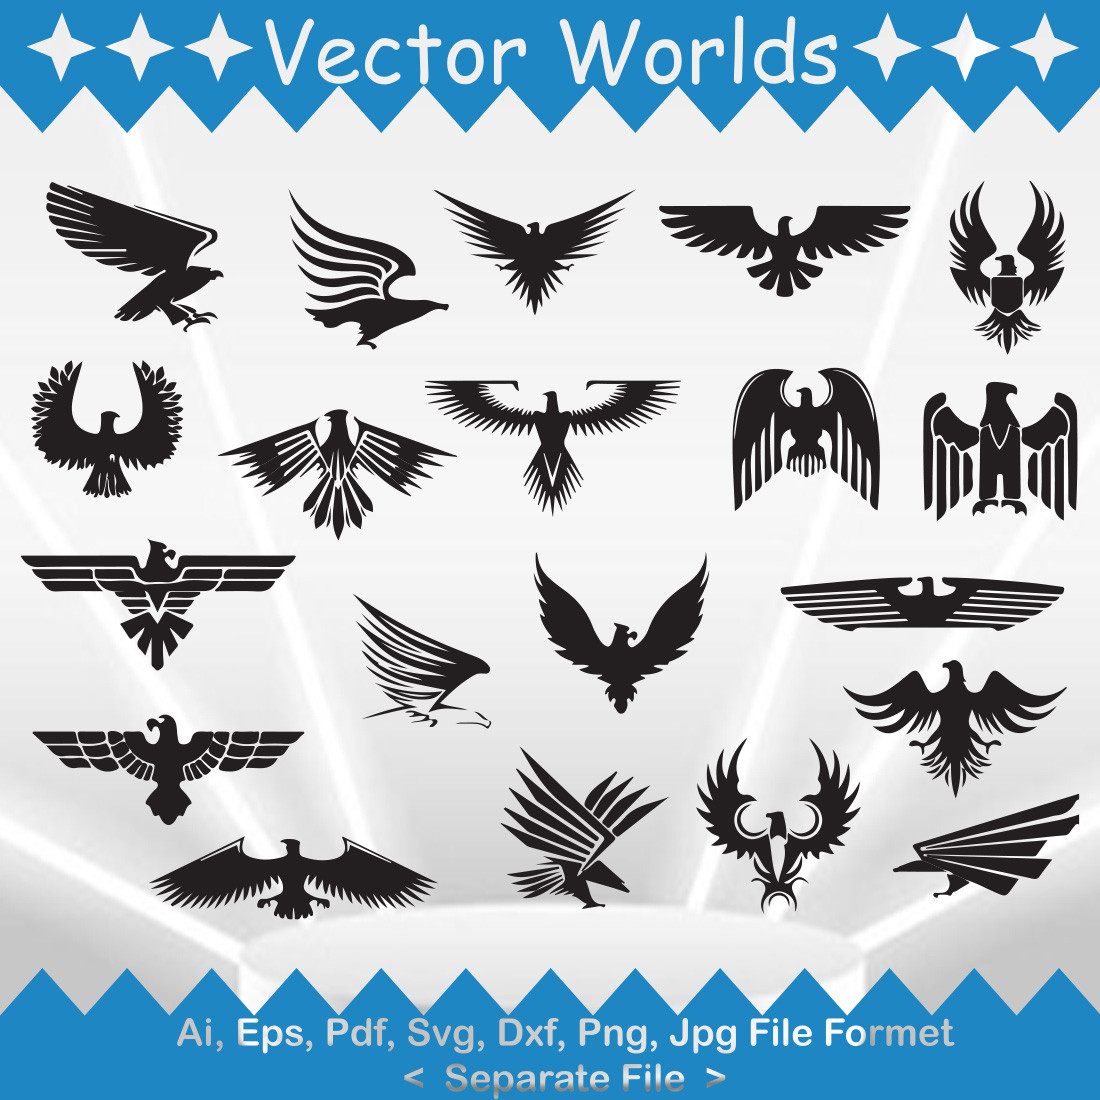 Heraldic Eagle SVG Vector Design cover image.